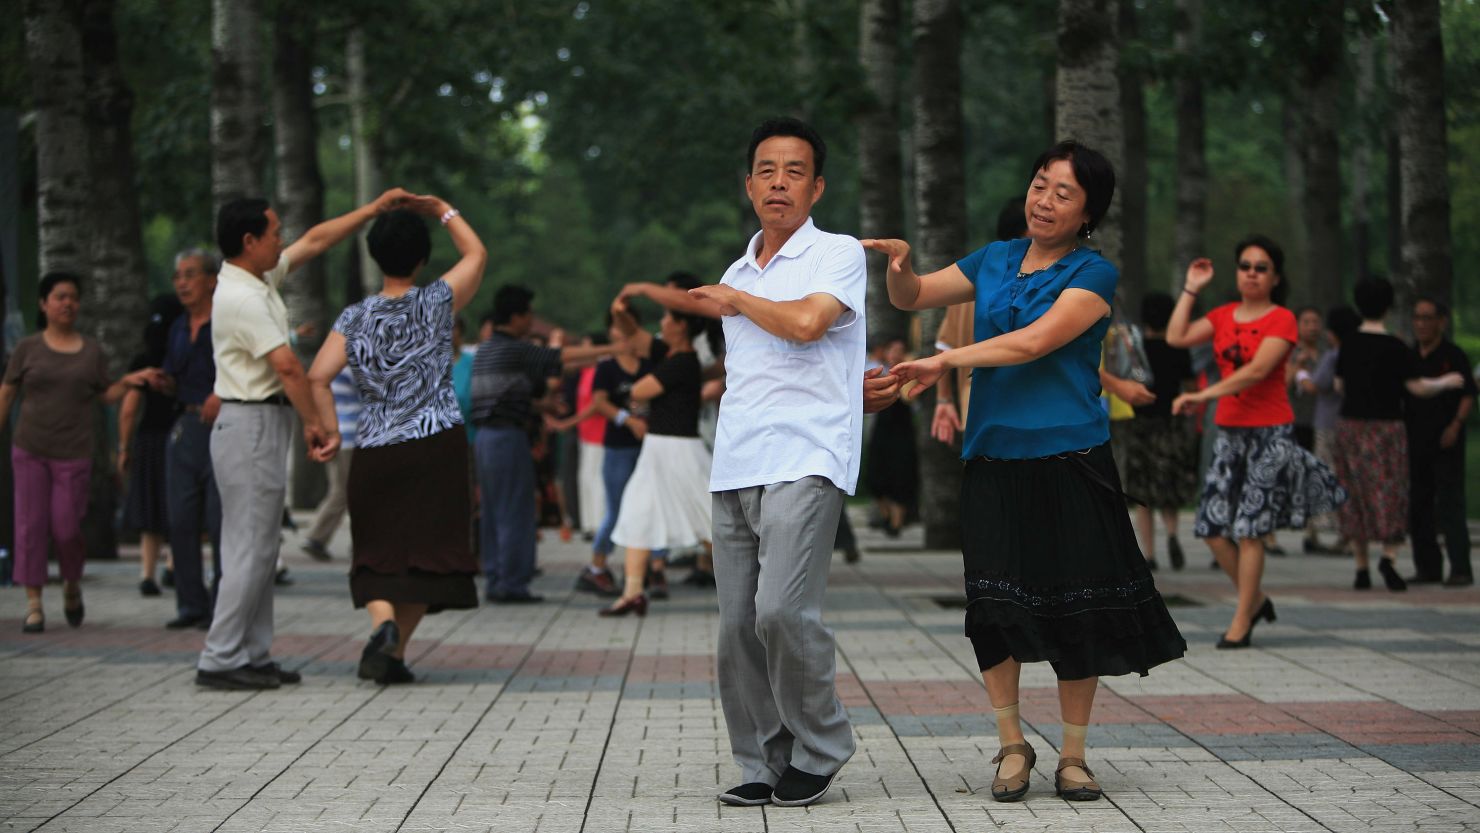 Beijing residents practice ballroom dancing in a park in Beijing, China. 